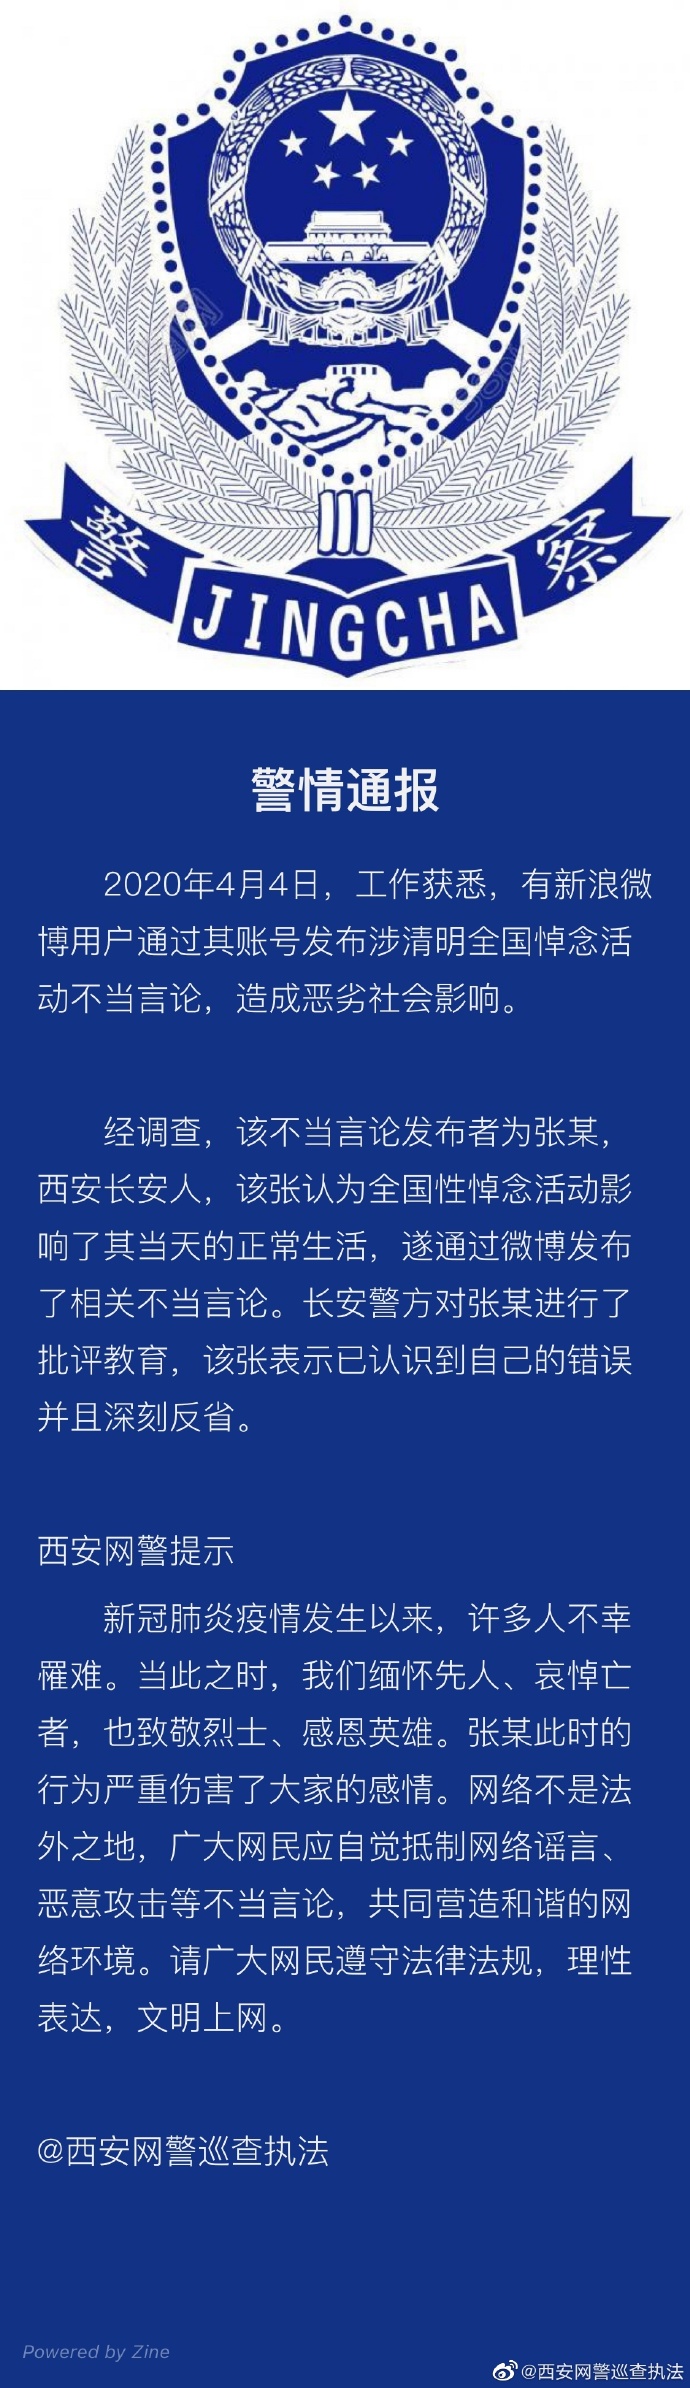 西安一网友发布涉清明全国悼念活动不当言论 被警方批评教育